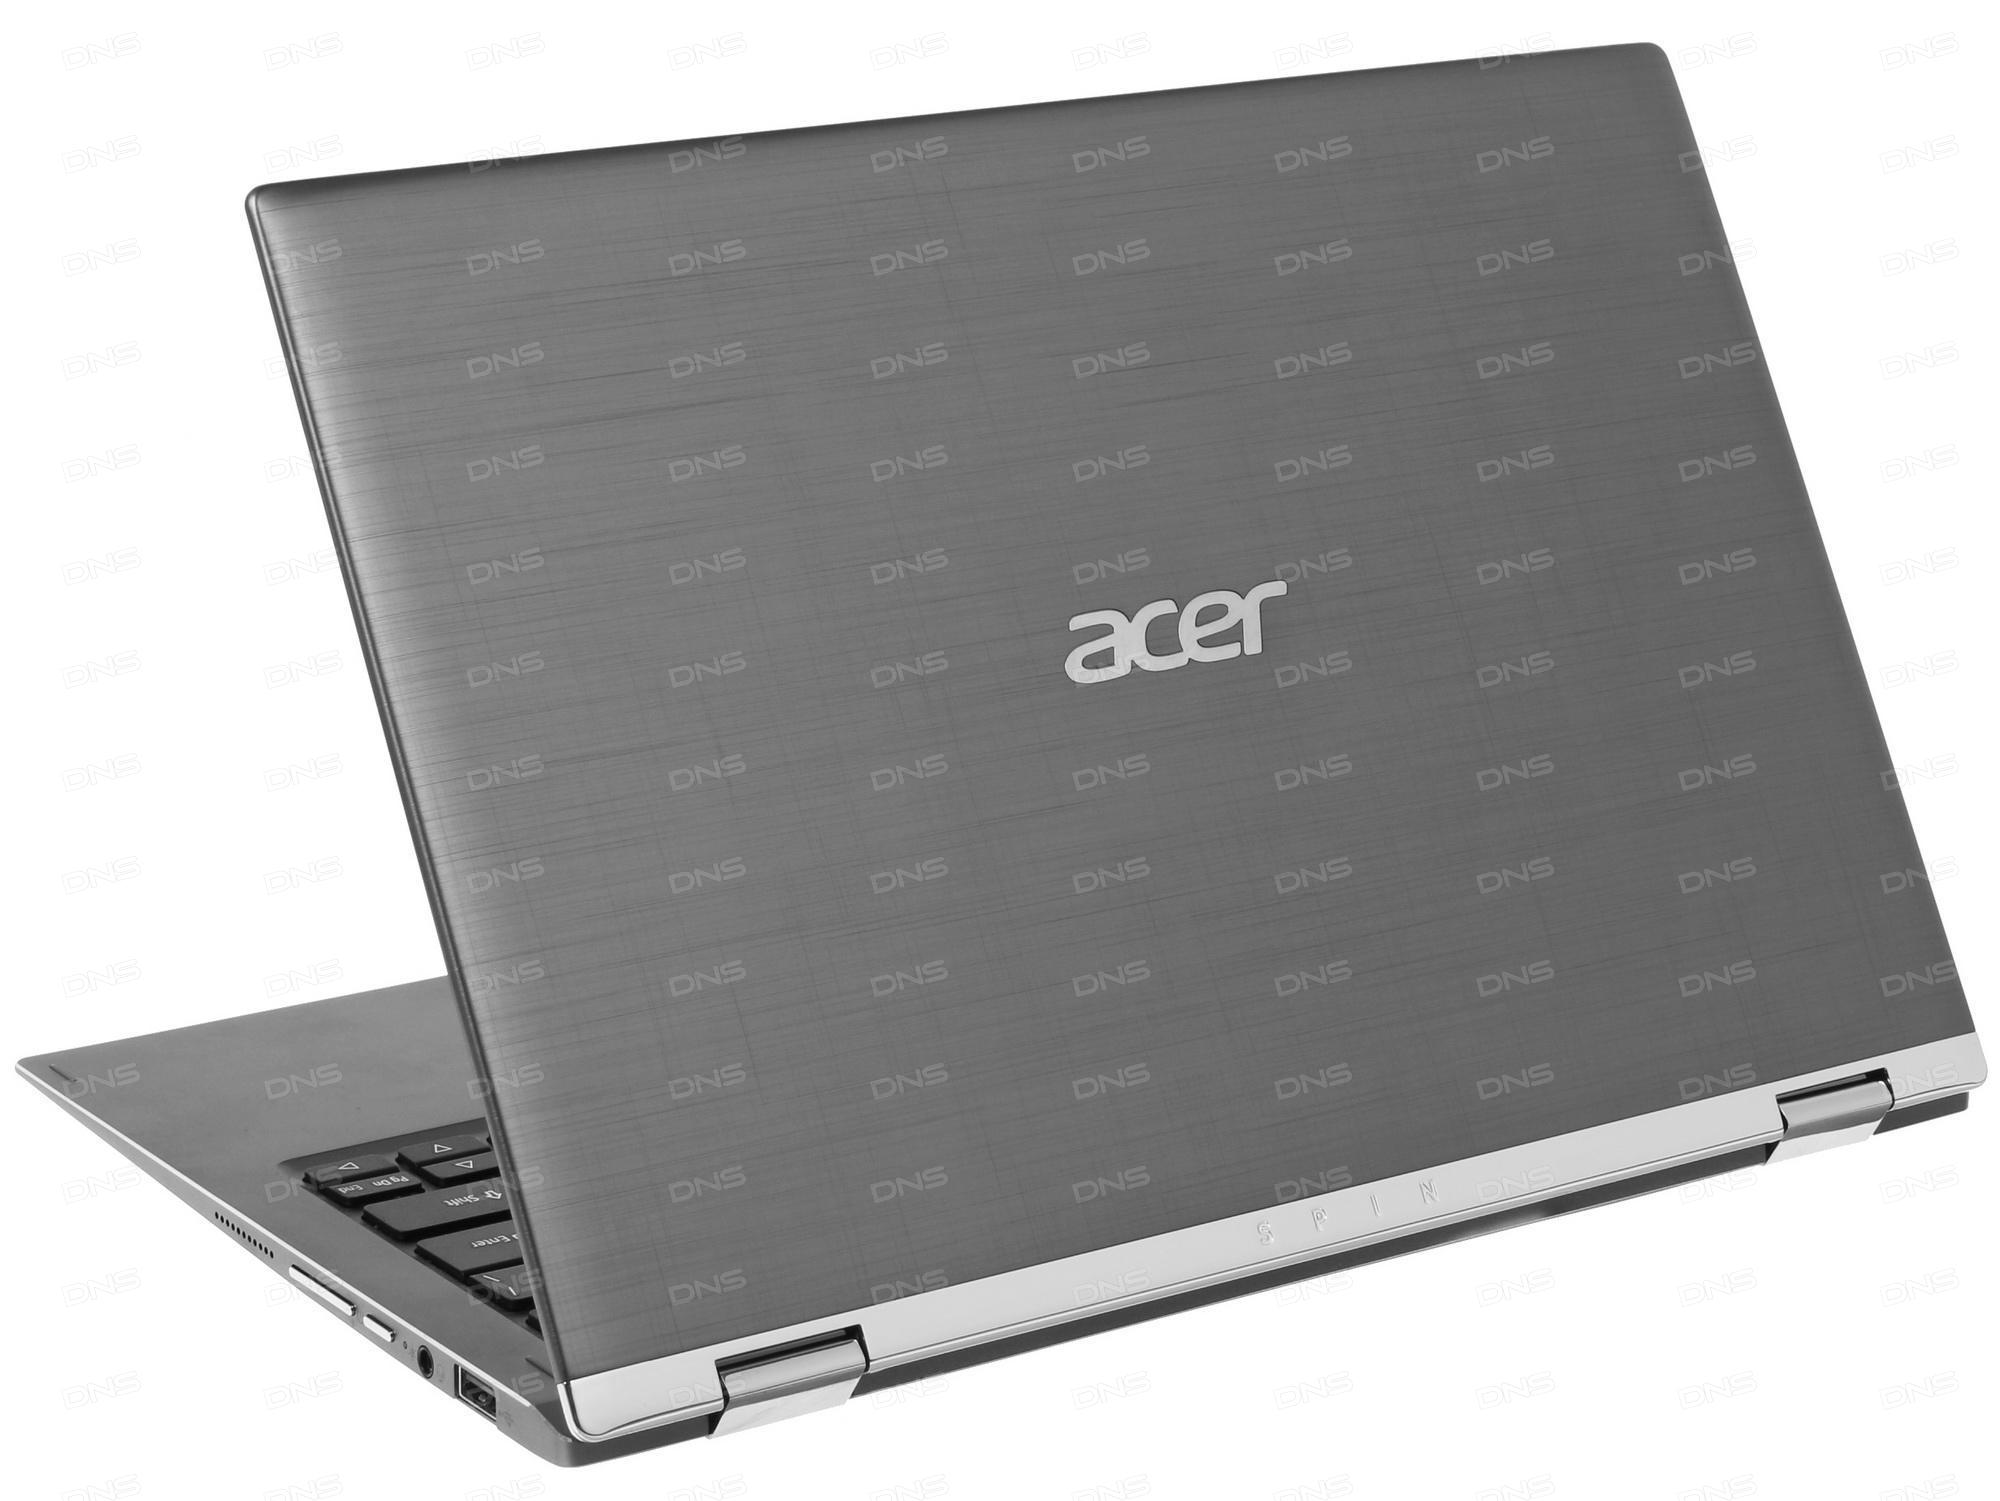 Acer spin sp111 32n. Acer Spin 1 sp111-32n. Ультрабук Acer Spin 1 sp111-32n-p25r. Acer Spin 1 sp111-32n-p25r.